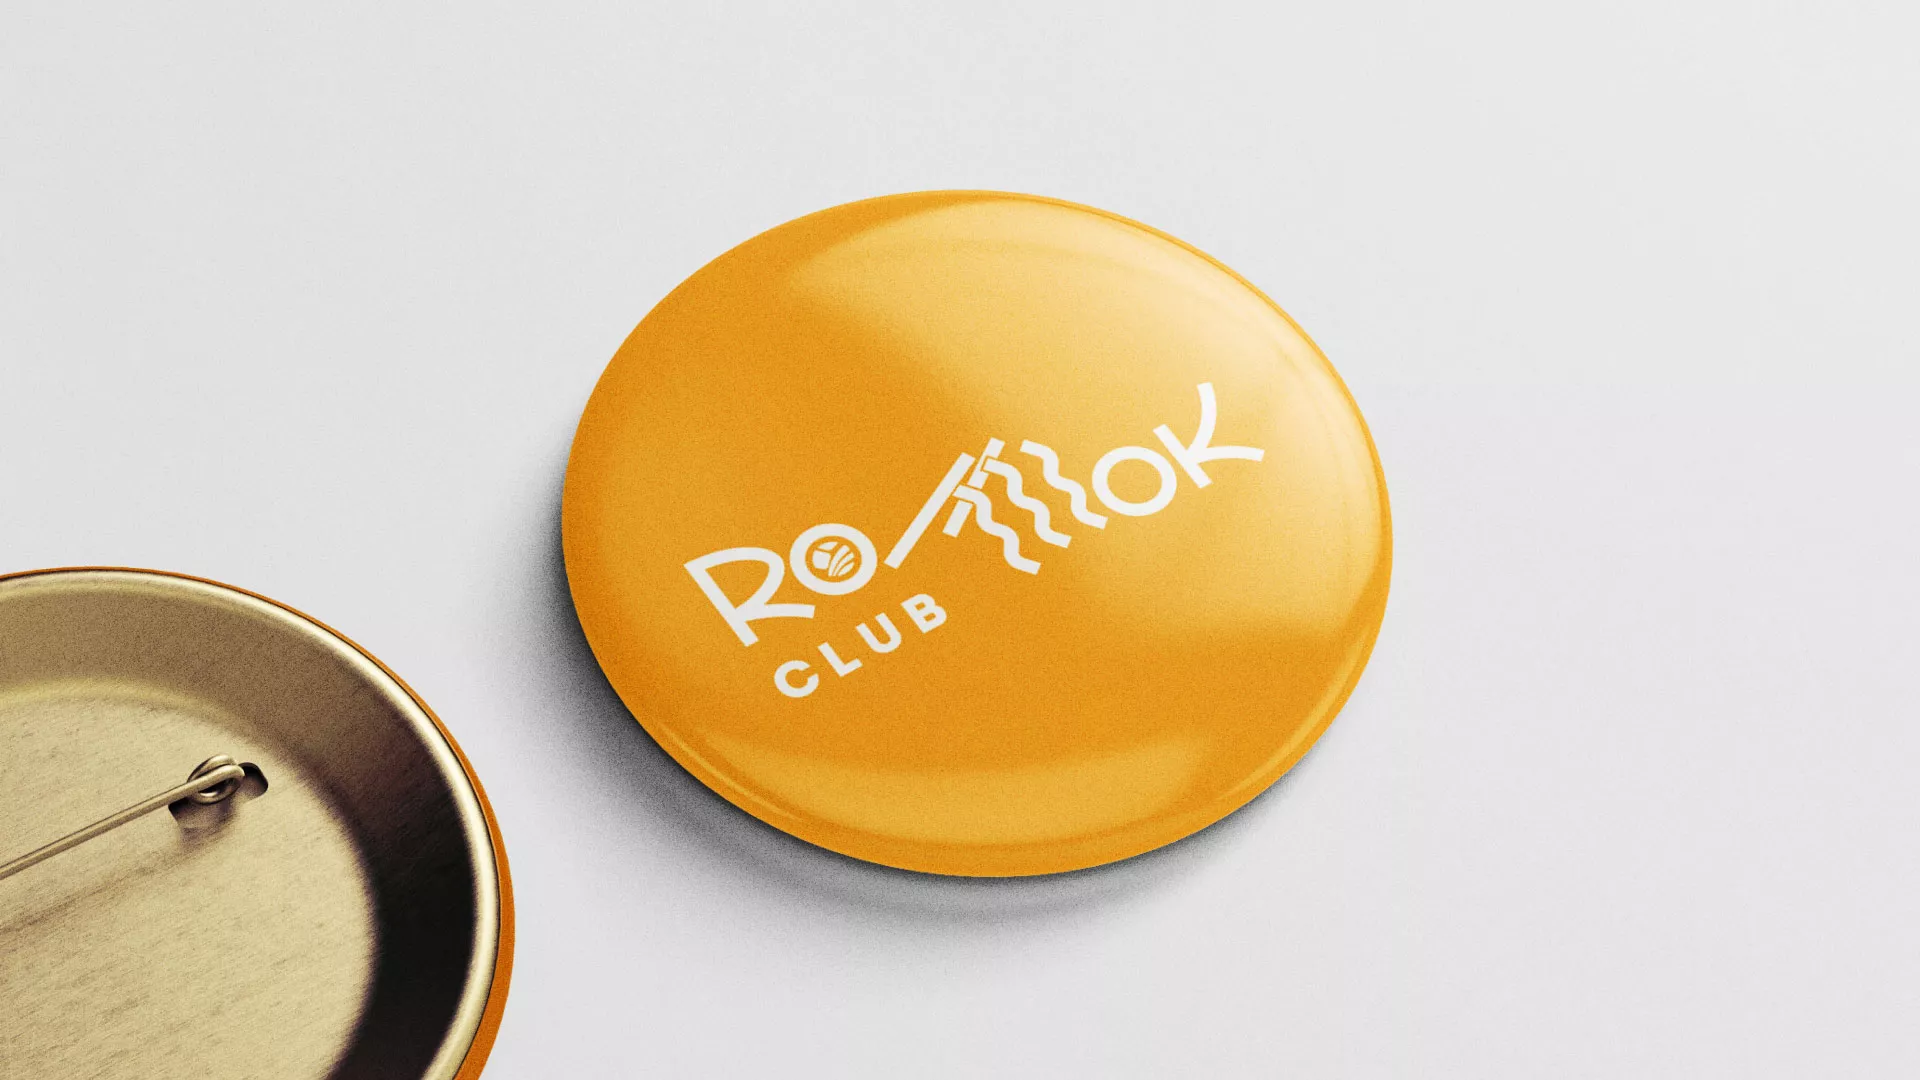 Создание логотипа суши-бара «Roll Wok Club» в Андреаполе